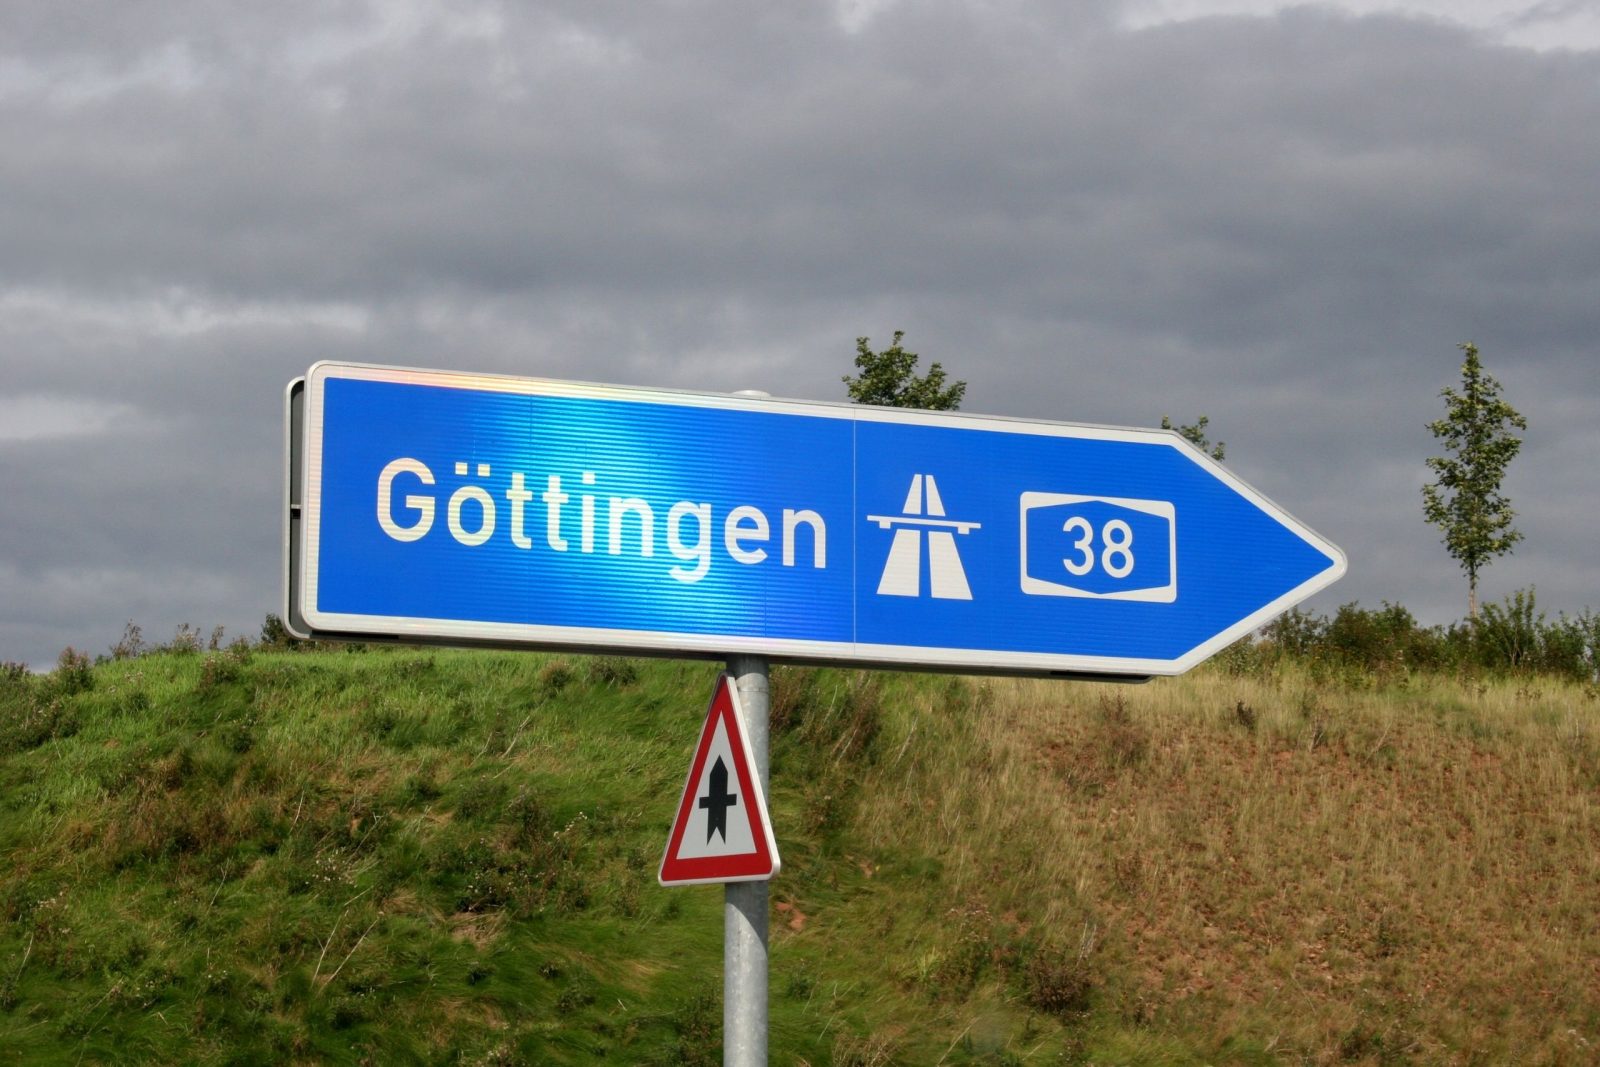 Visit Göttingen. Top places are here.